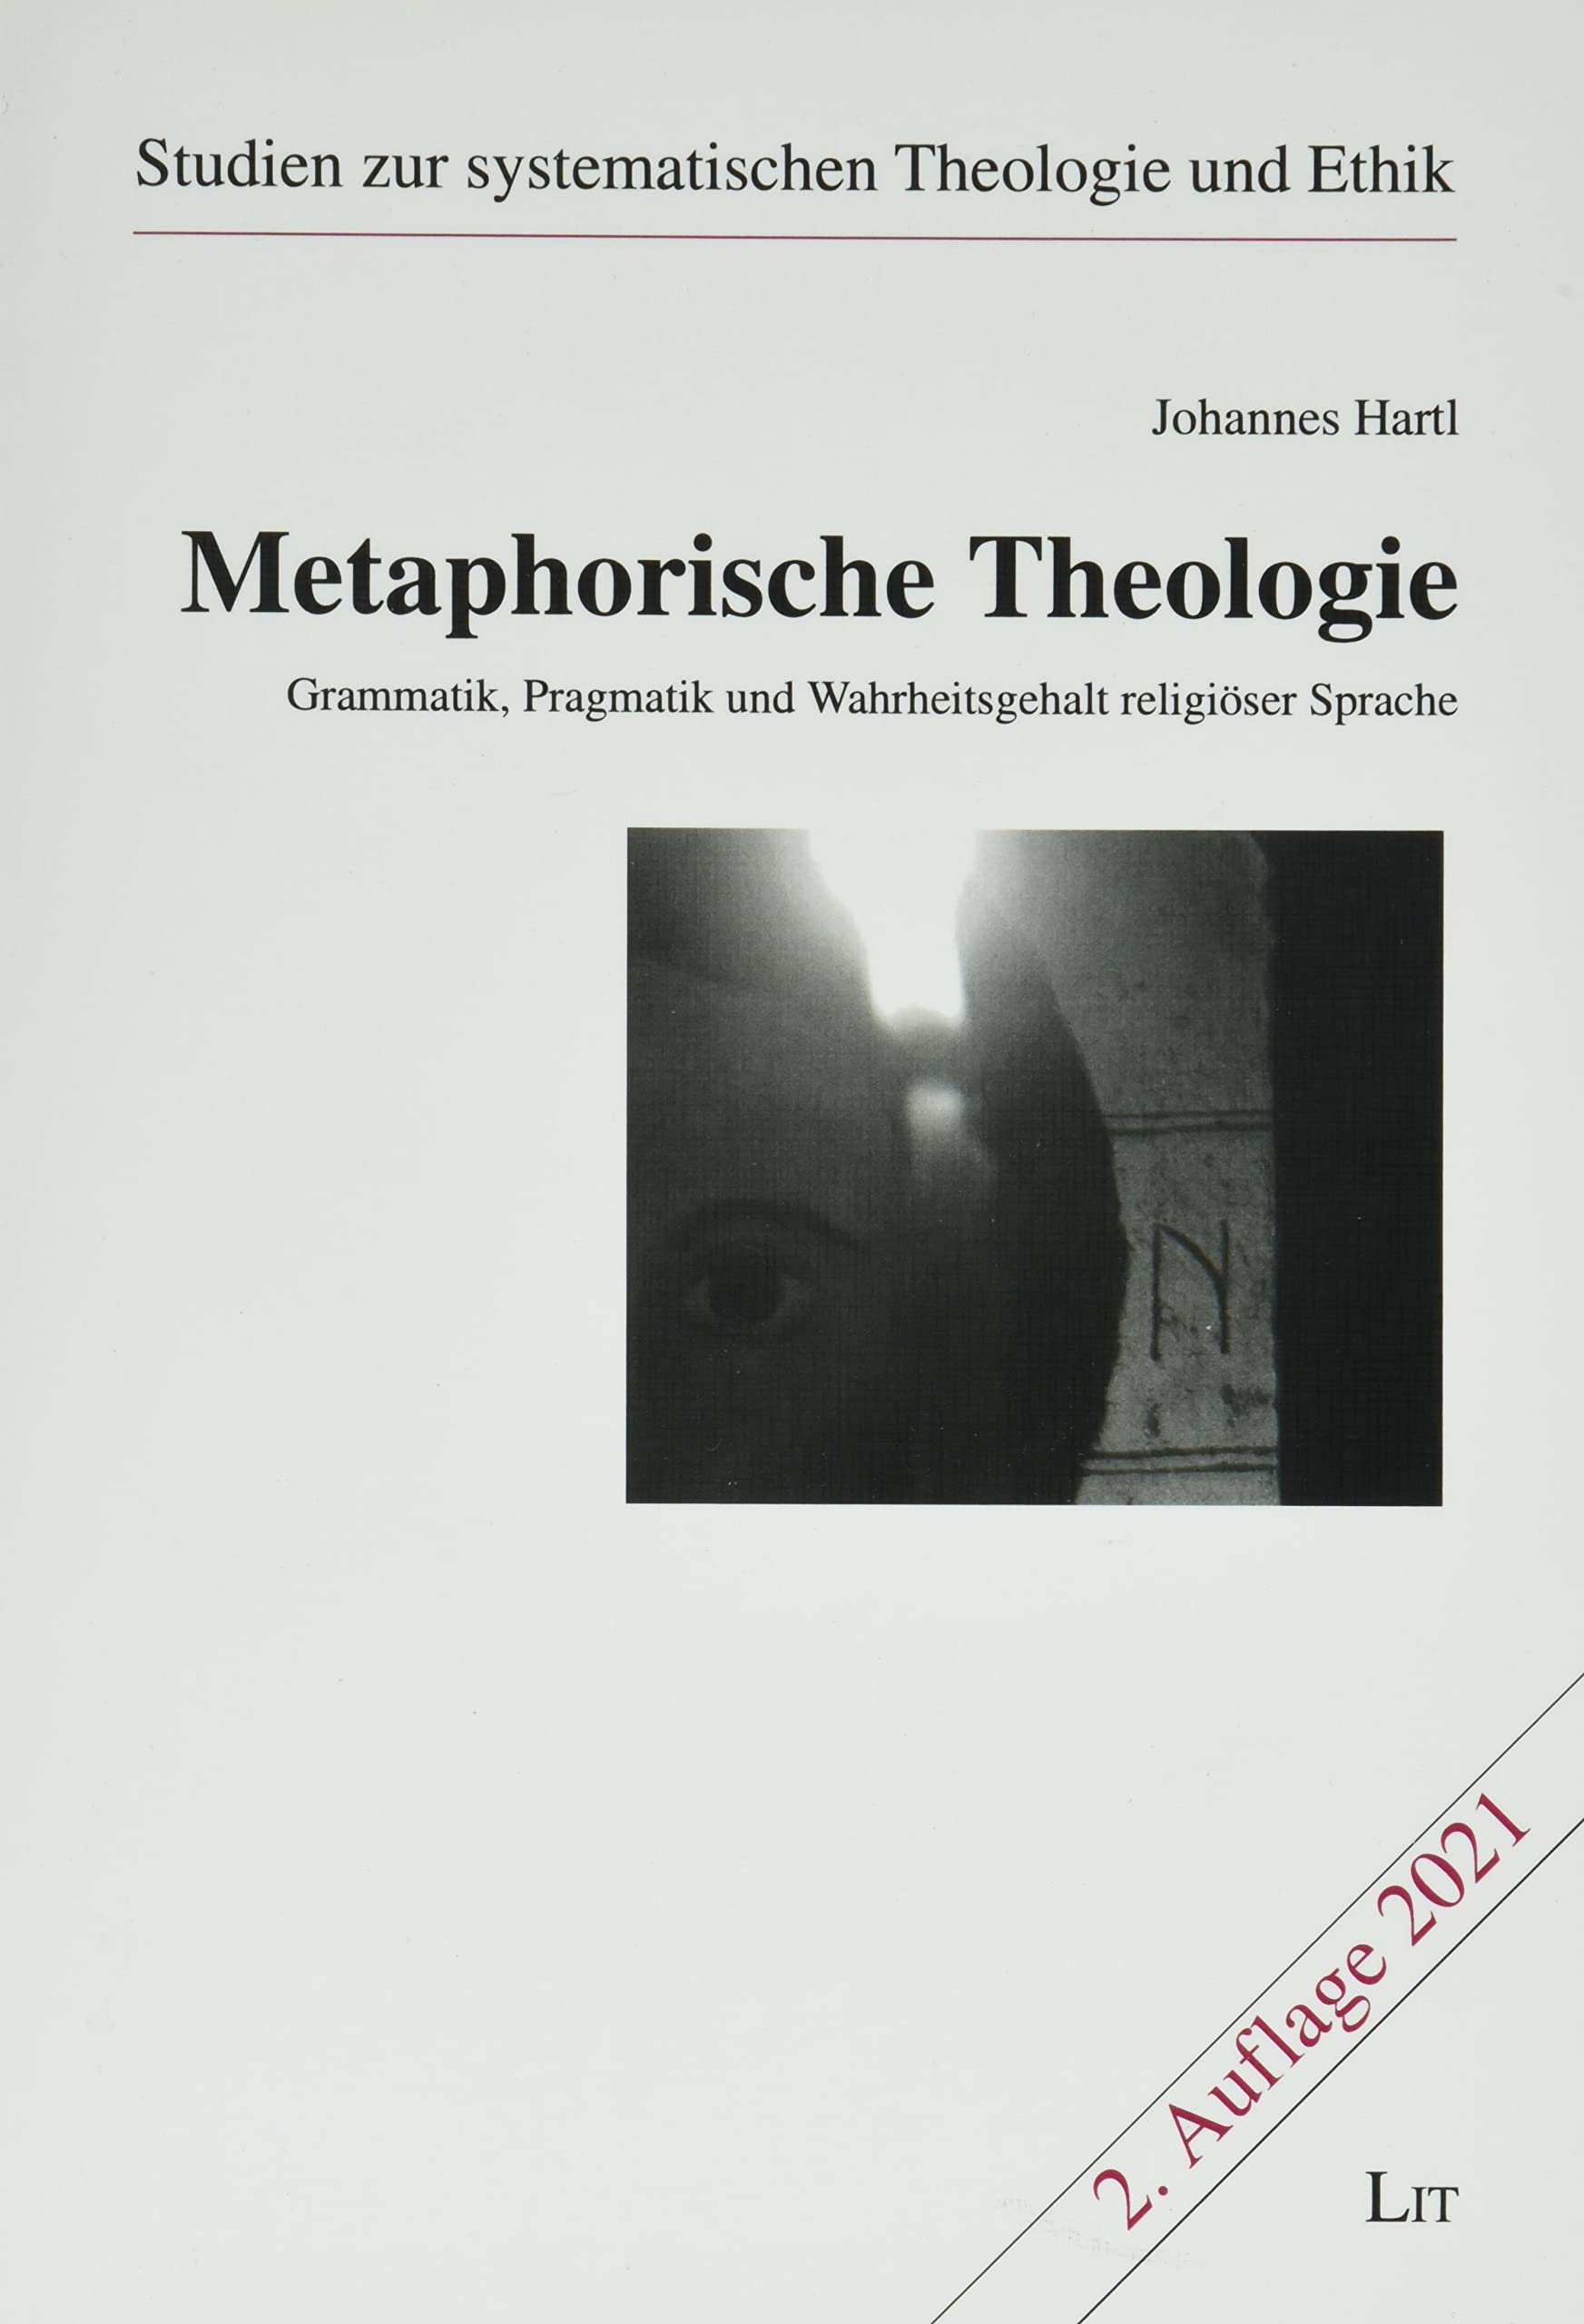 buch-MetaphorischeTheologie-cover.jpg